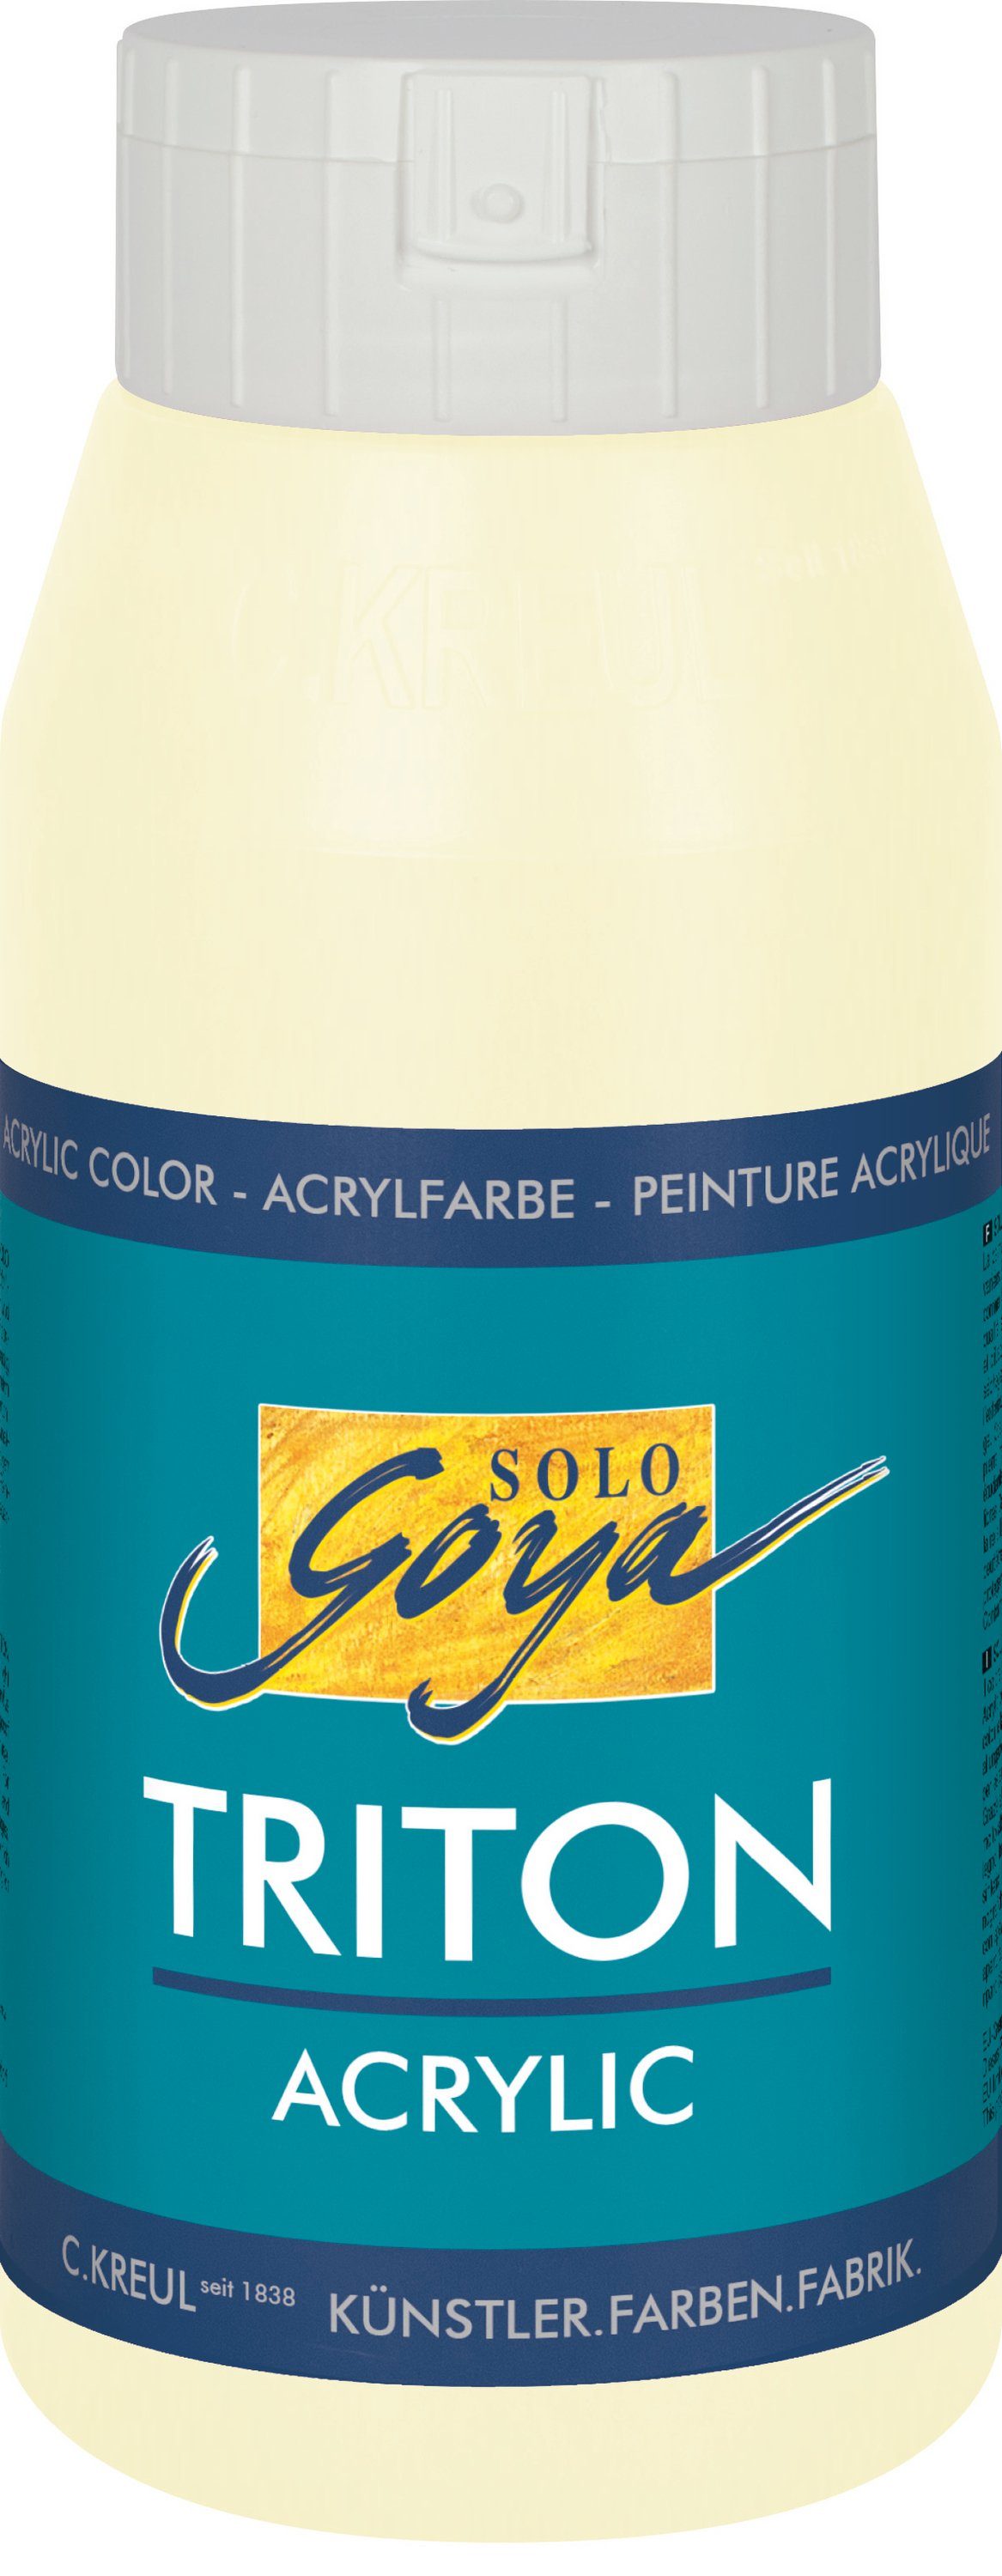 Kreul Acrylfarbe Solo Goya Triton Acrylic, 750 ml Elfenbein